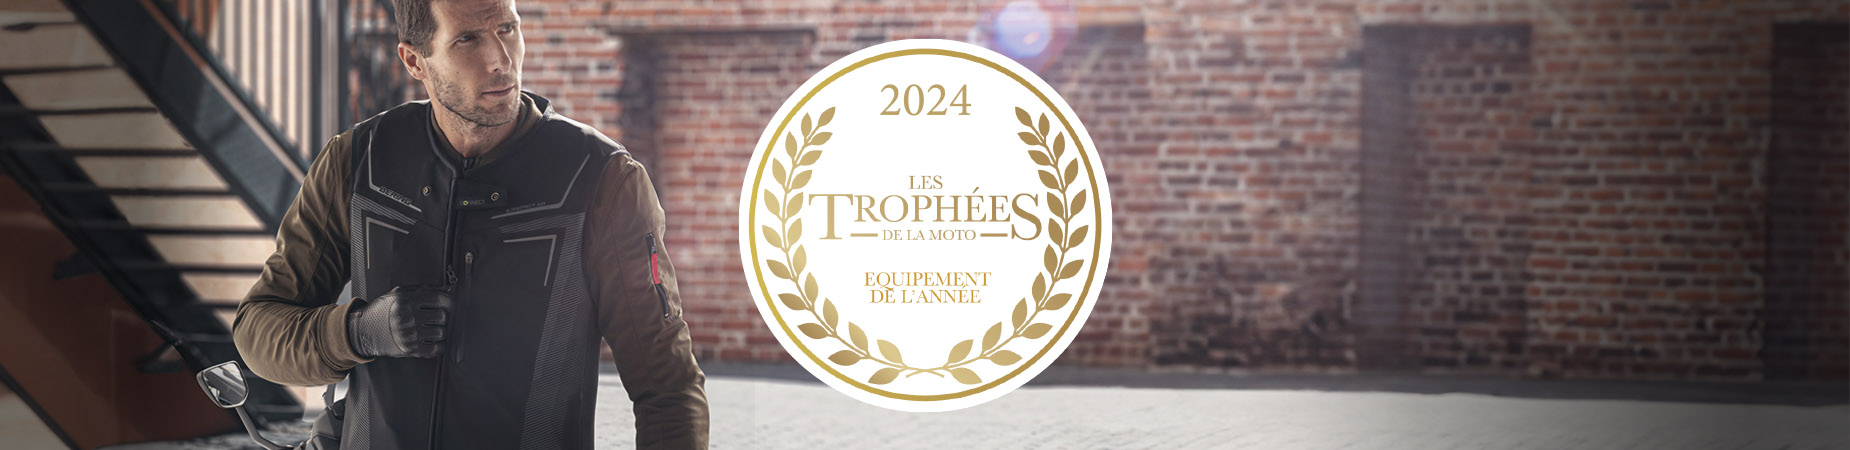 Innovación E-Protect Air equipo del año "Trophées de la Moto 2024" - Bering